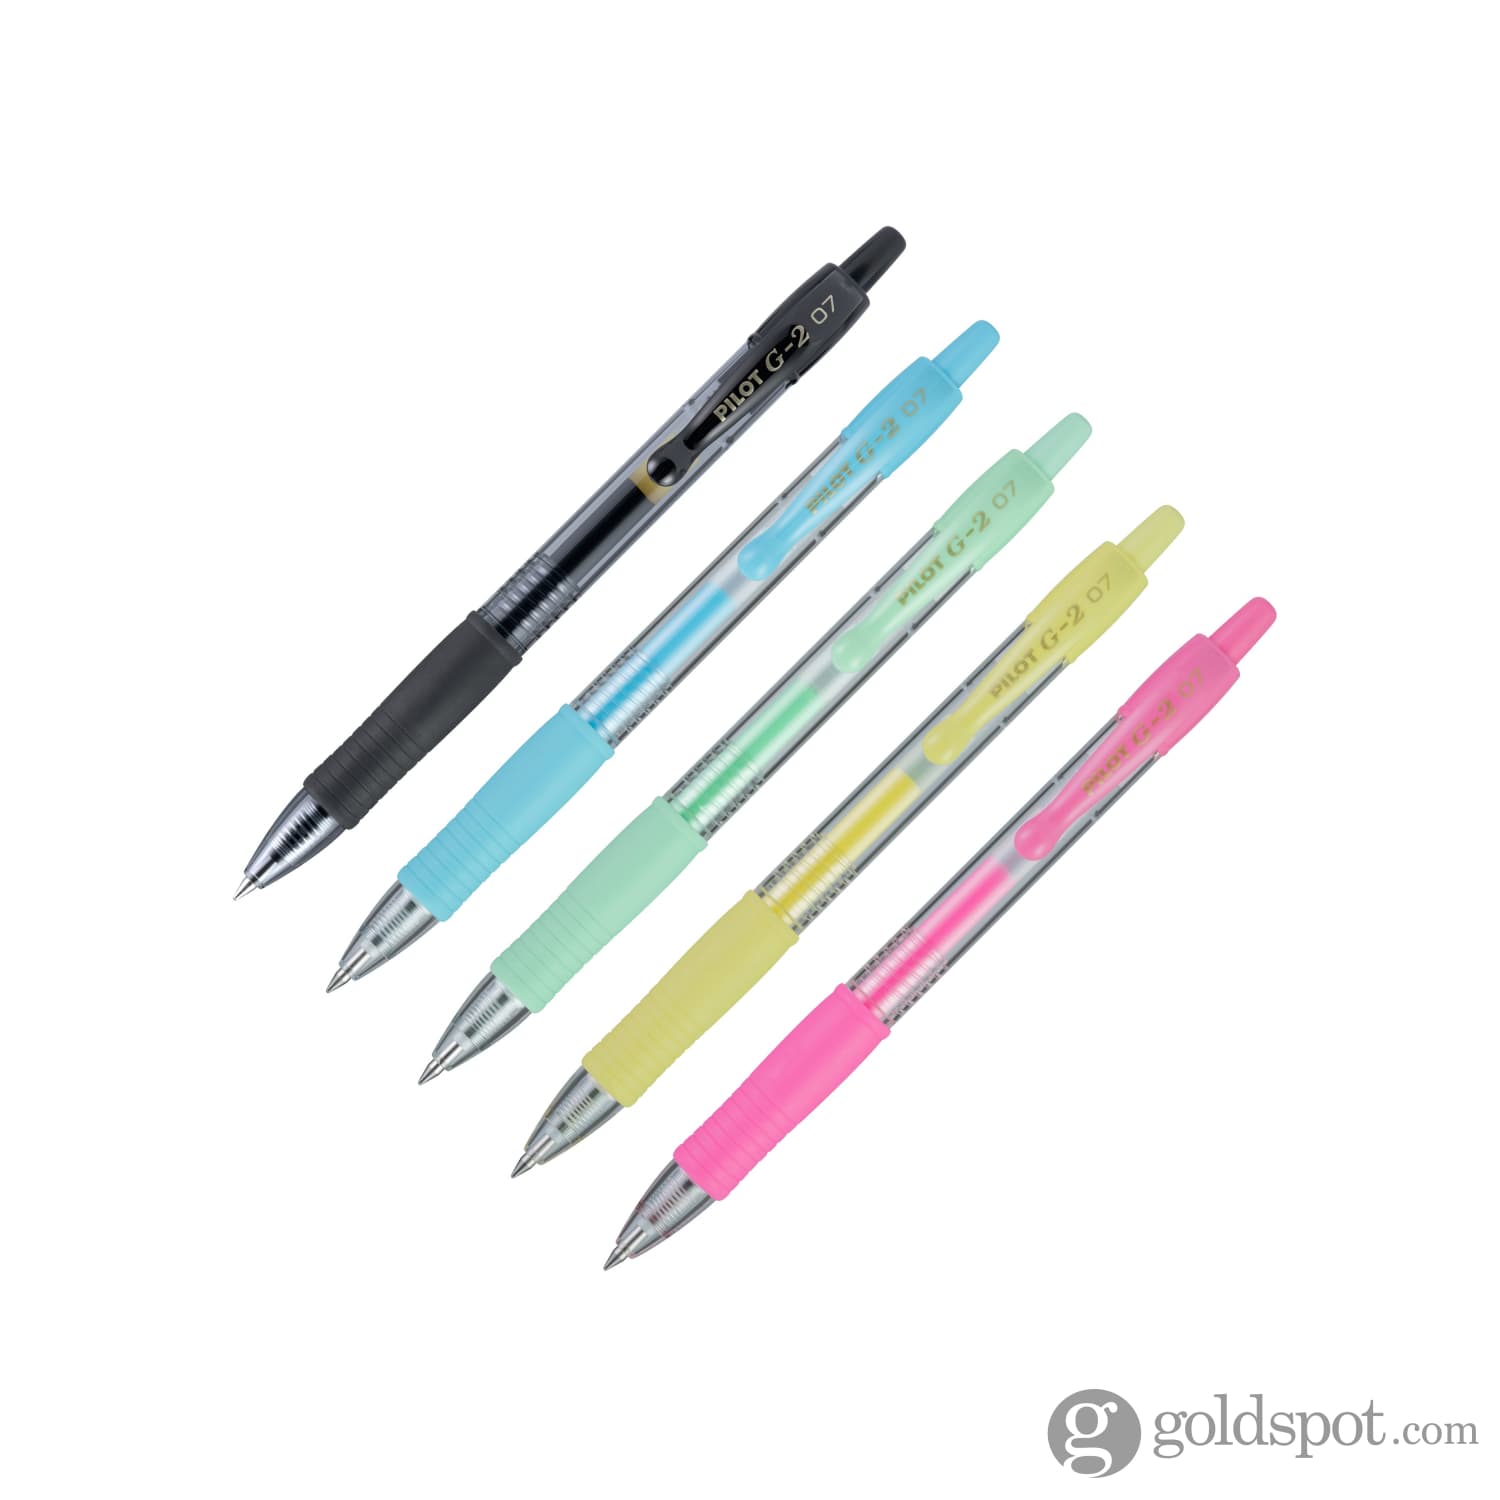 Pilot G2 Retractable Gel Ink Pens - Fine Pen Point Type